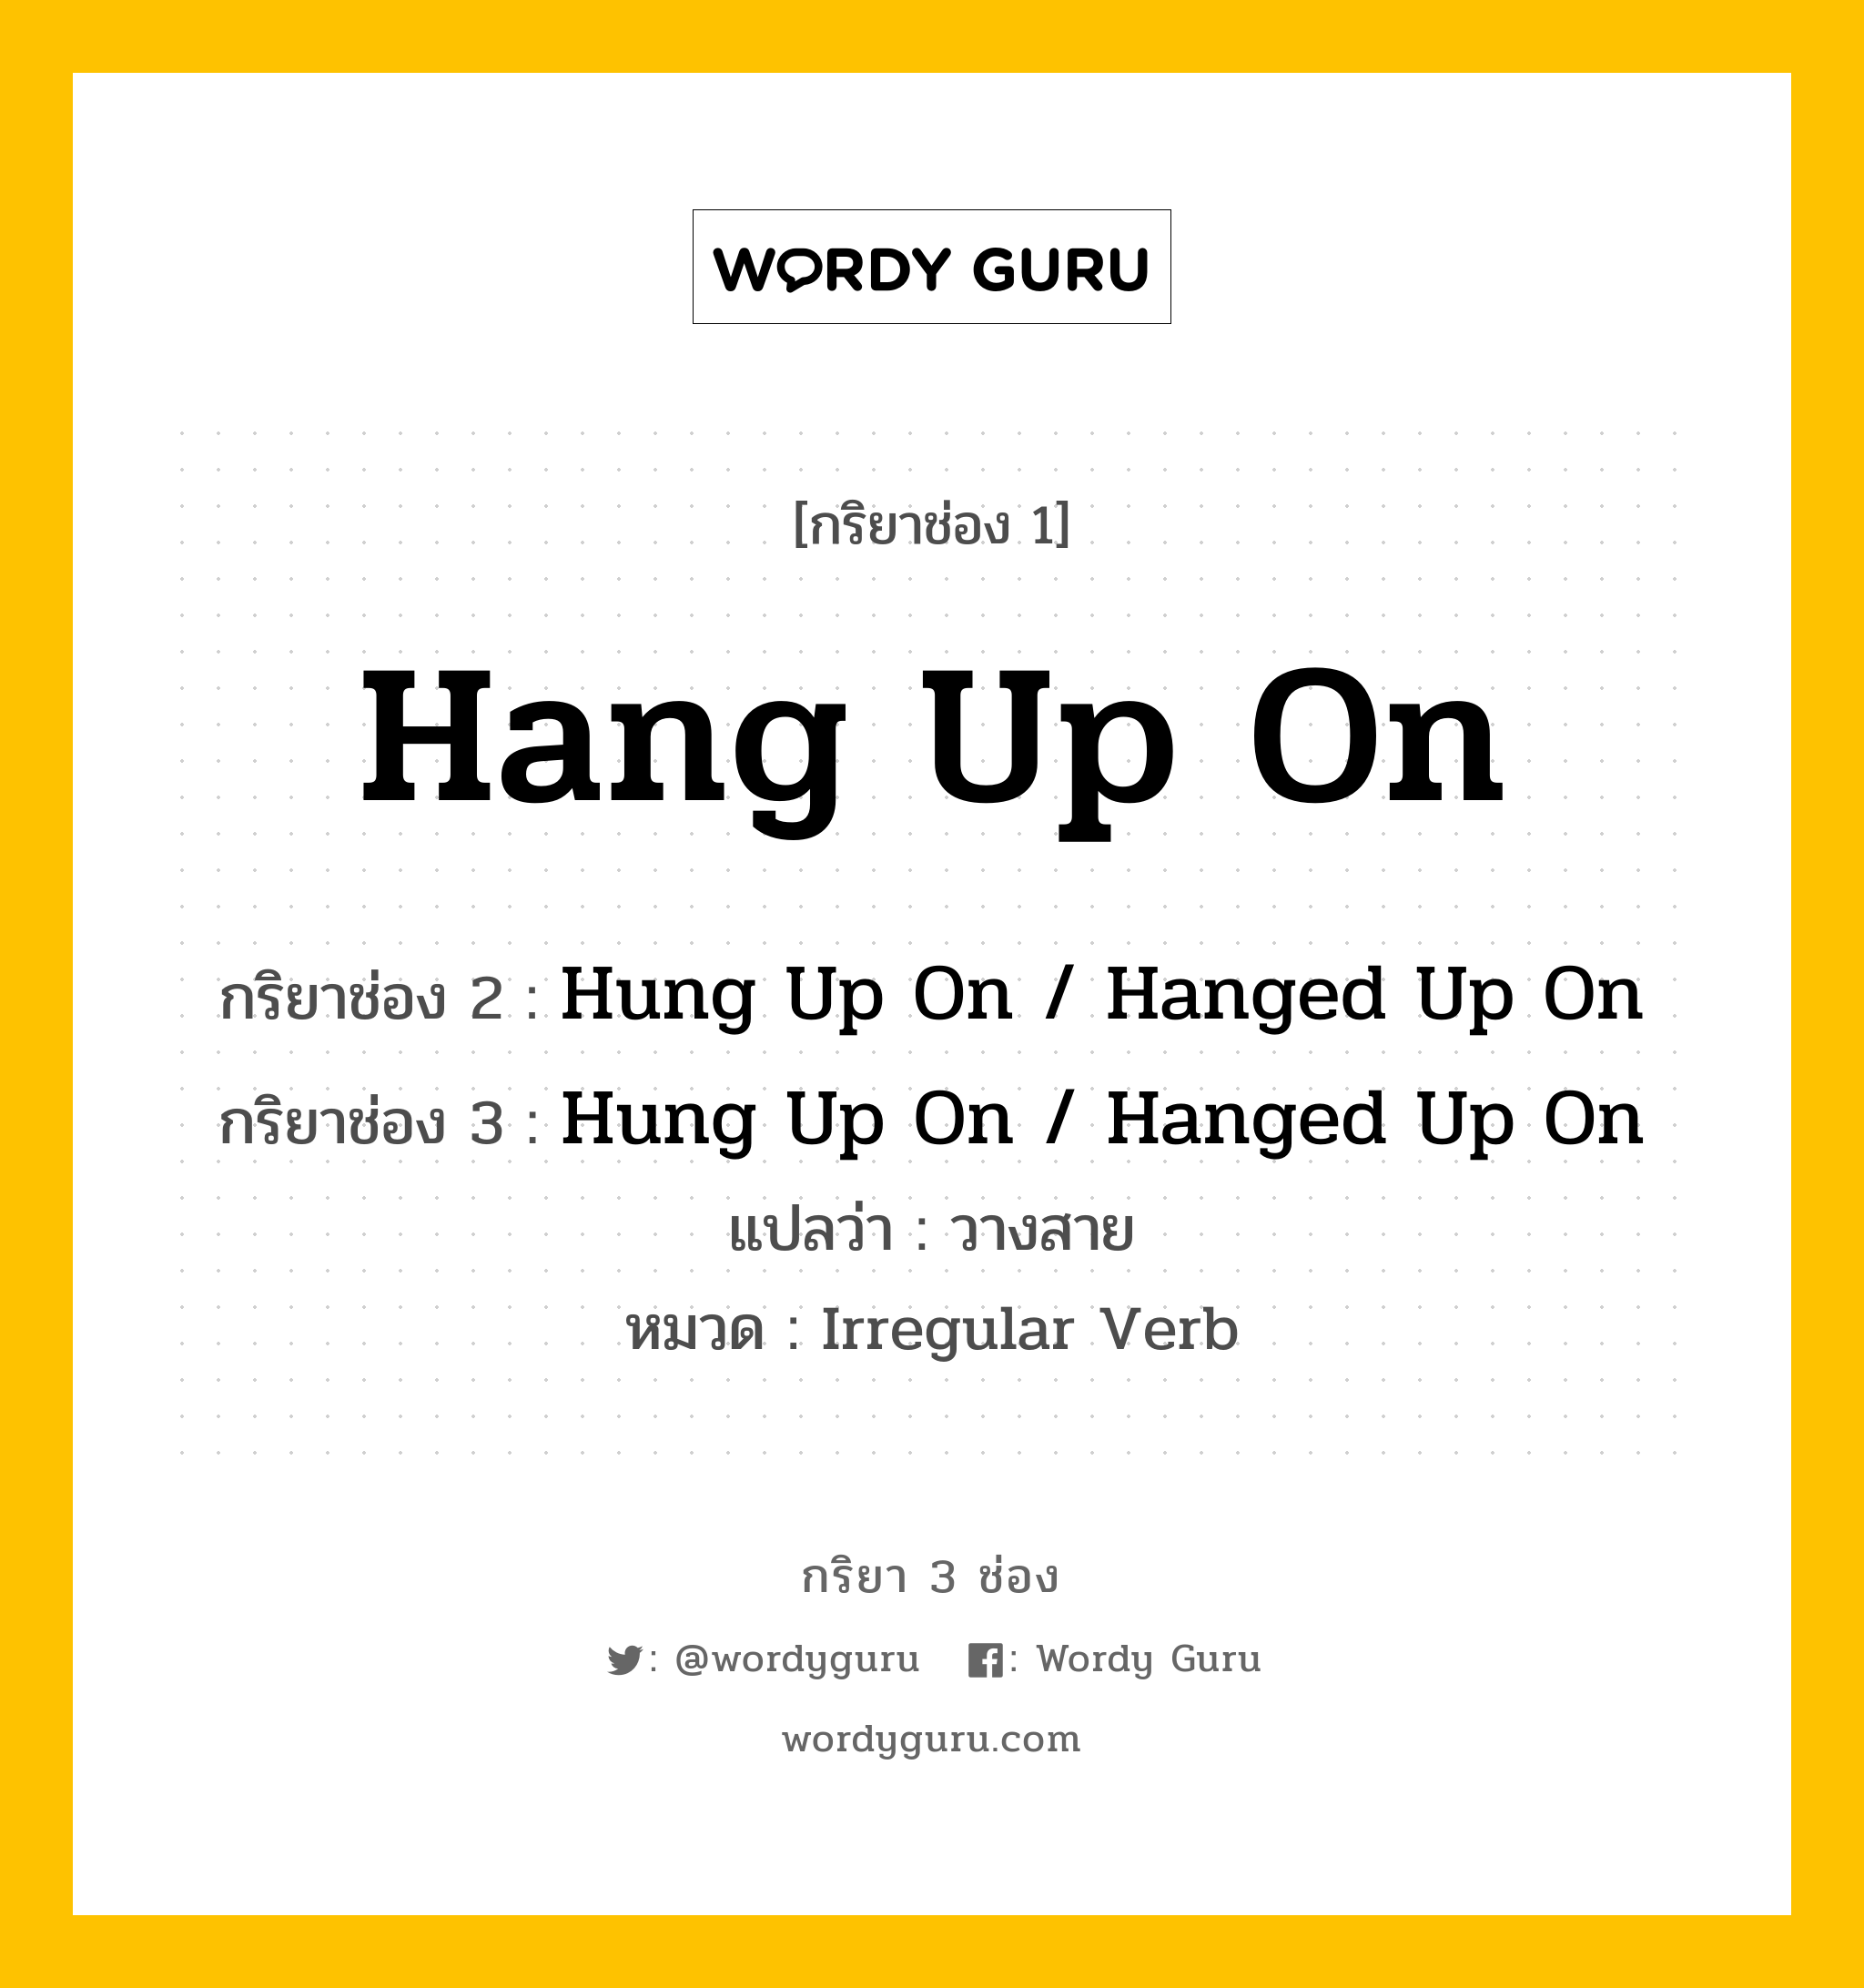 กริยา 3 ช่อง ของ Hang Up On คืออะไร? มาดูคำอ่าน คำแปลกันเลย, กริยาช่อง 1 Hang Up On กริยาช่อง 2 Hung Up On / Hanged Up On กริยาช่อง 3 Hung Up On / Hanged Up On แปลว่า วางสาย หมวด Irregular Verb หมวด Irregular Verb